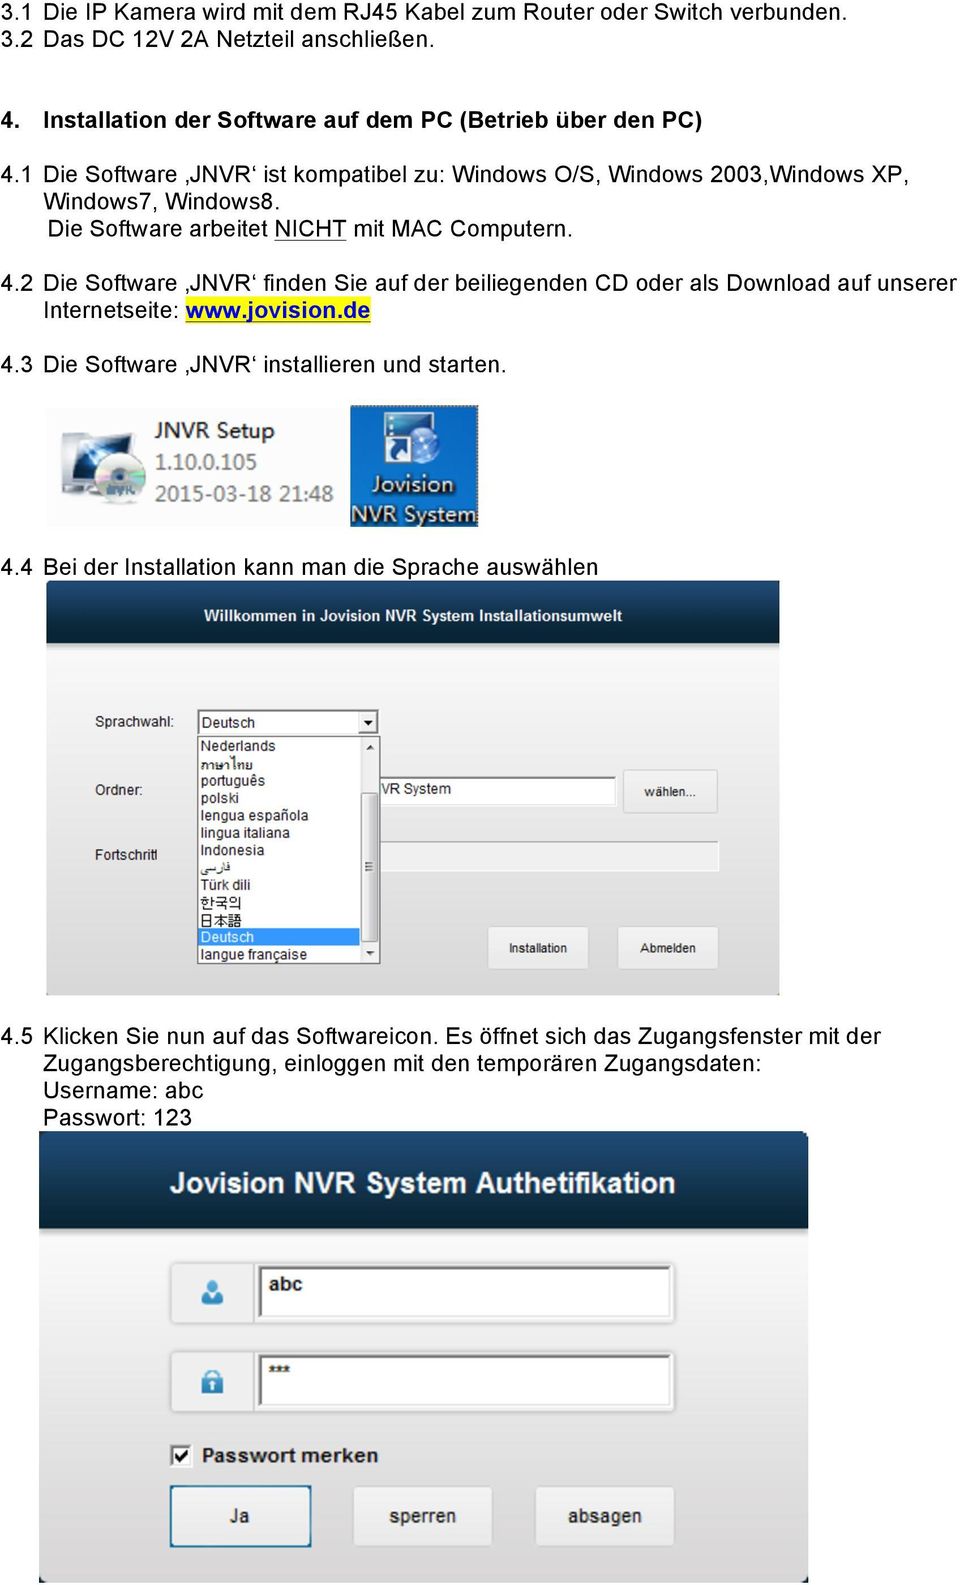 2 Die Software JNVR finden Sie auf der beiliegenden CD oder als Download auf unserer Internetseite: www.jovision.de 4.3 Die Software JNVR installieren und starten. 4.4 Bei der Installation kann man die Sprache auswählen 4.